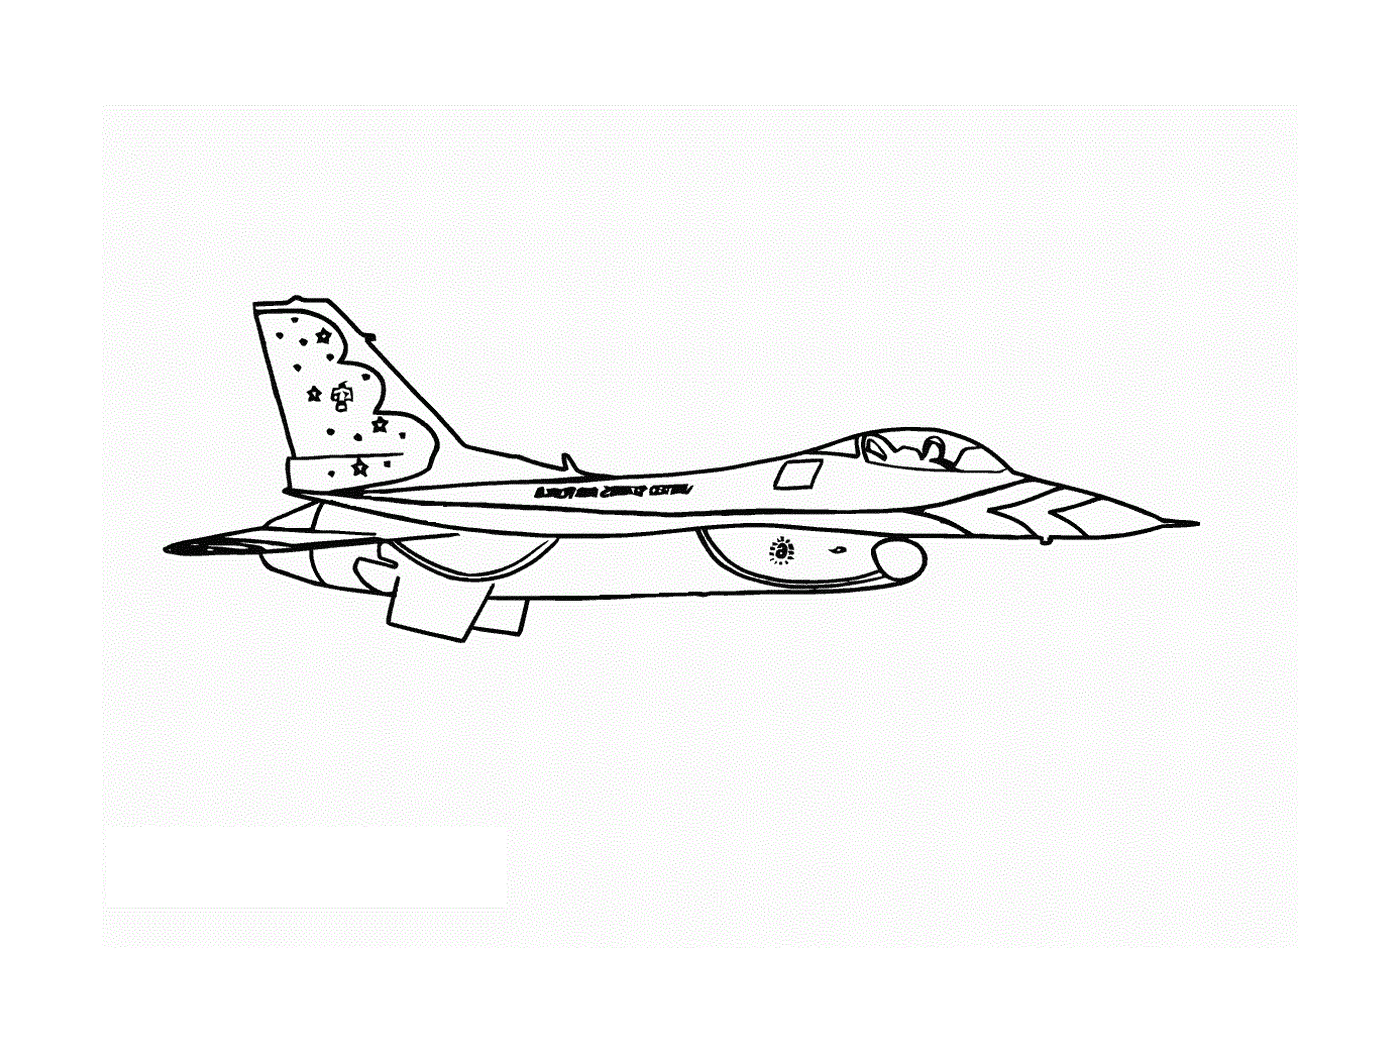   Un avion de chasse est dessiné 